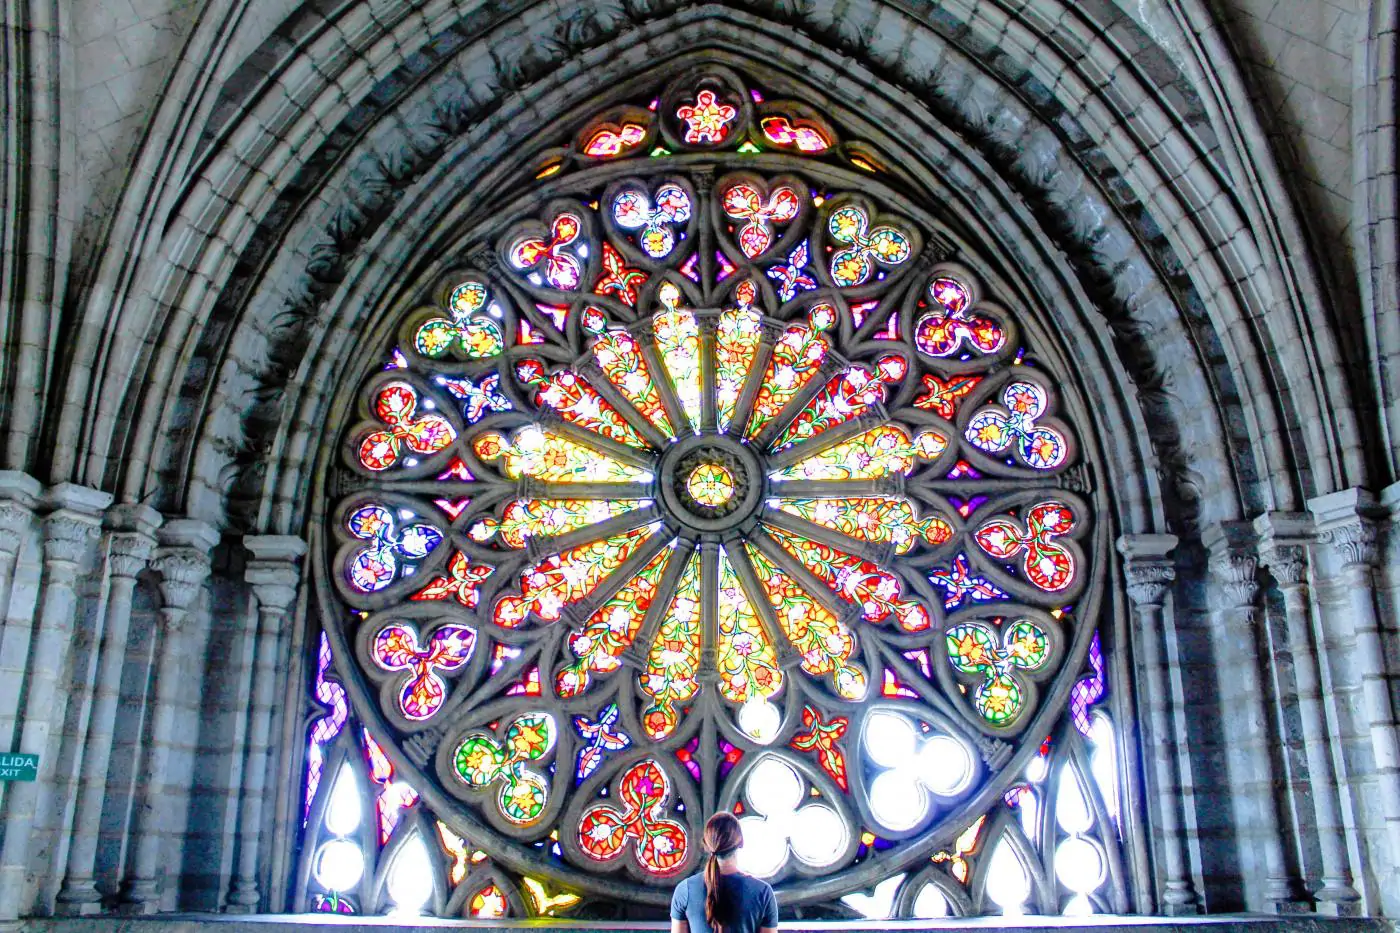 Stained Glass window in Basilica Nacional del Voto